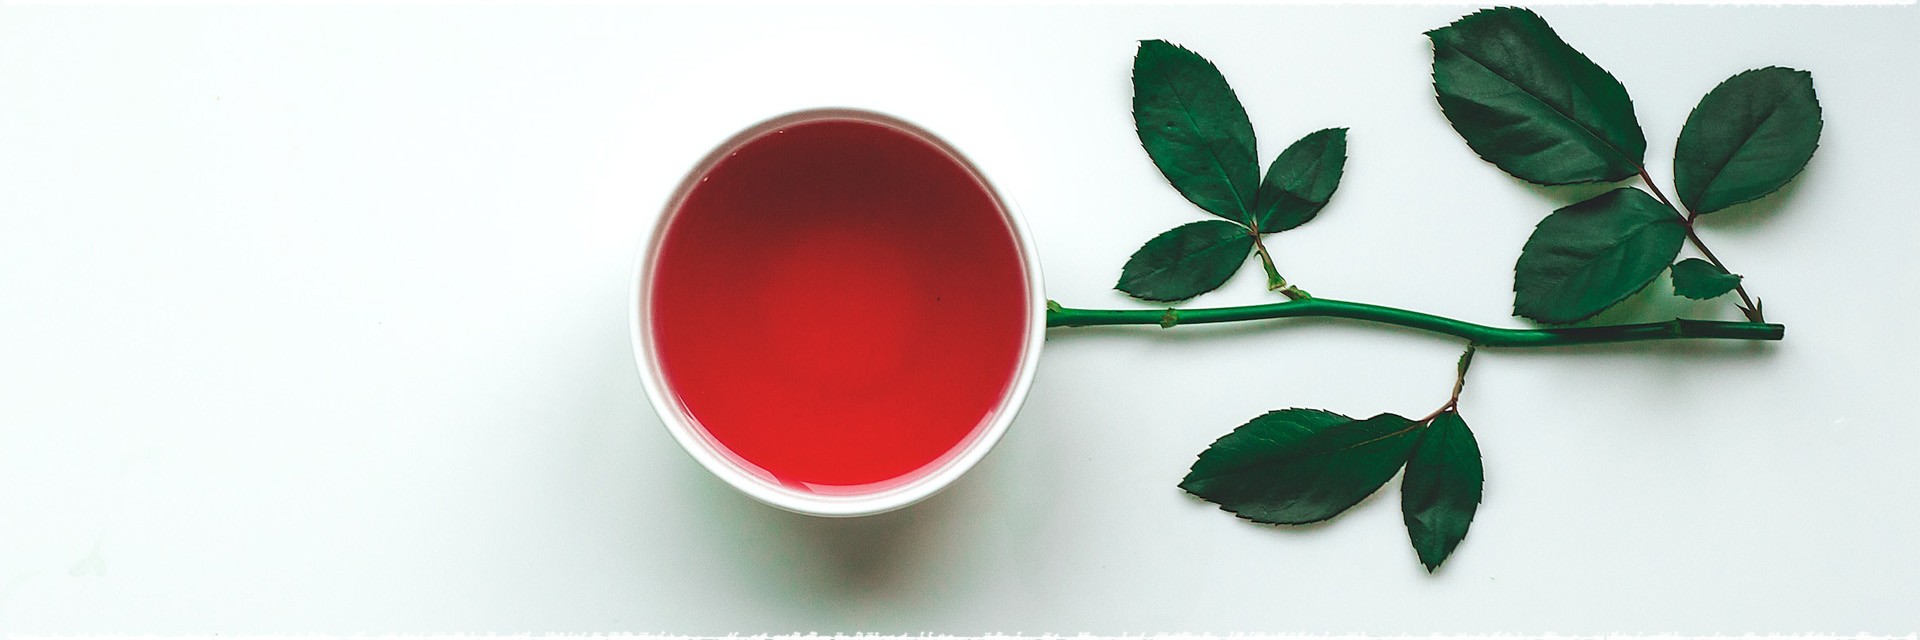 What Is Darjeeling Black Tea?